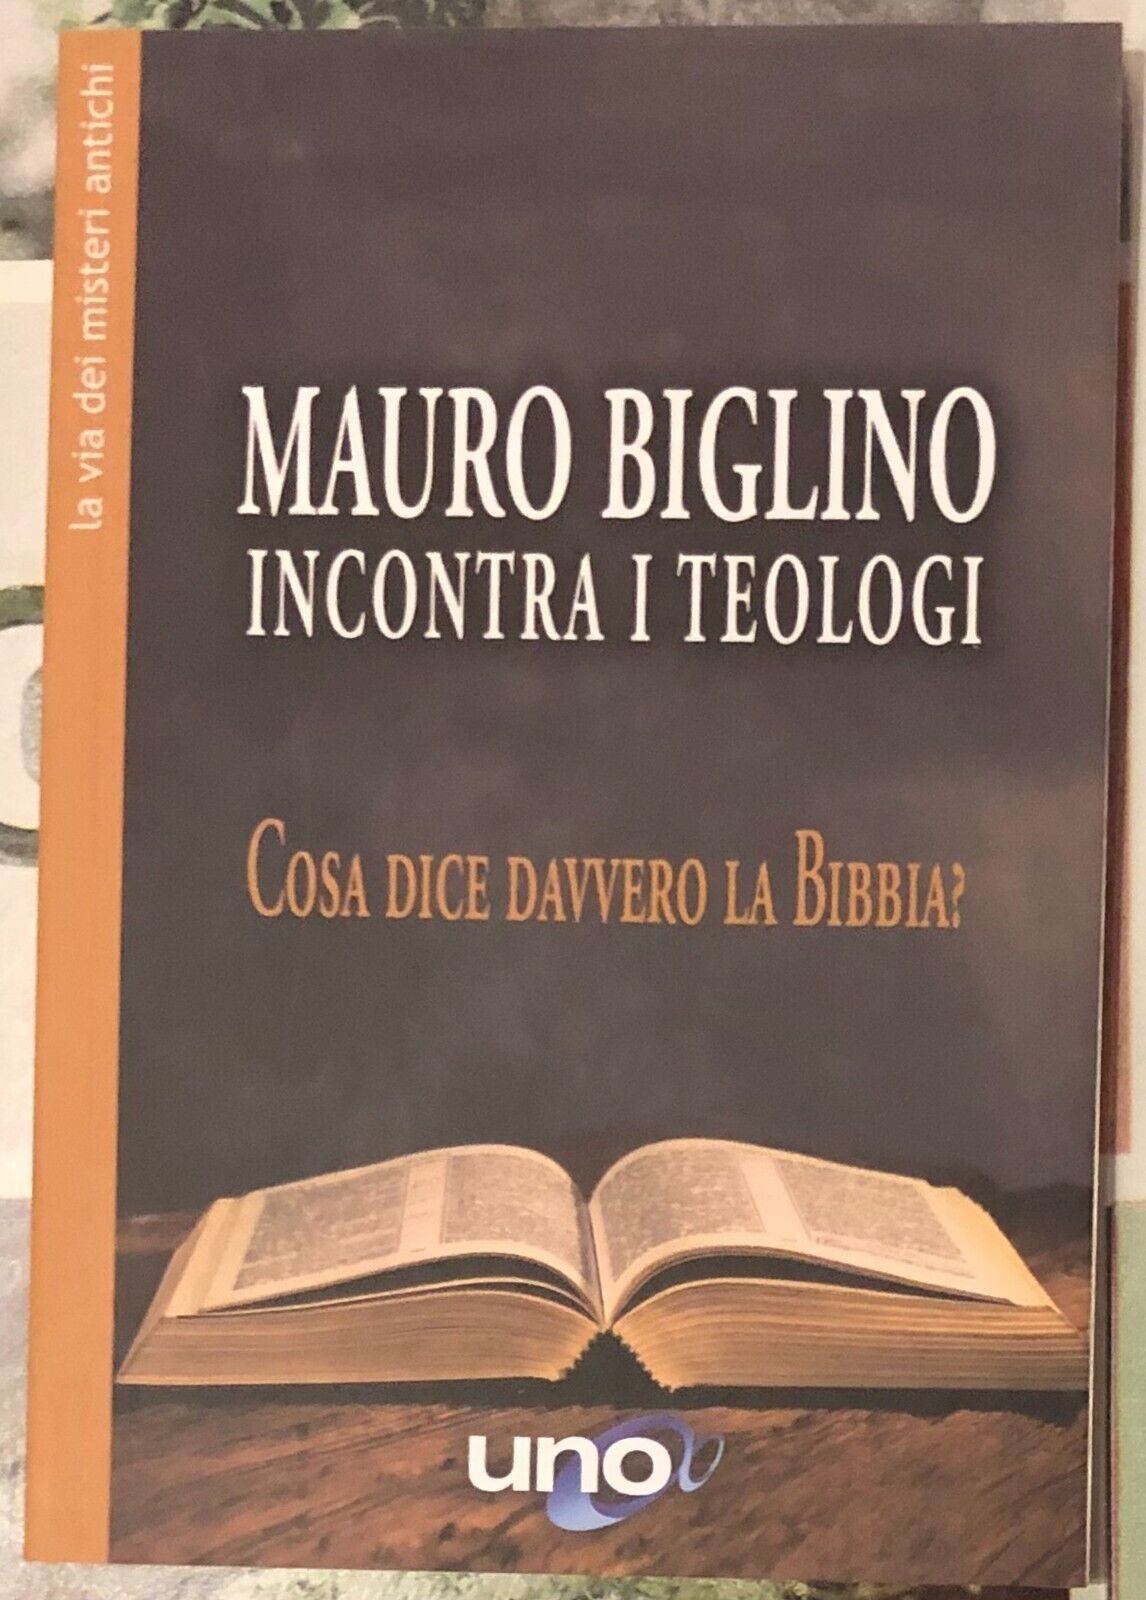 Mauro Biglino Incontra i Teologi. Cosa dice davvero la Bibbia? di Mauro Biglino libro usato